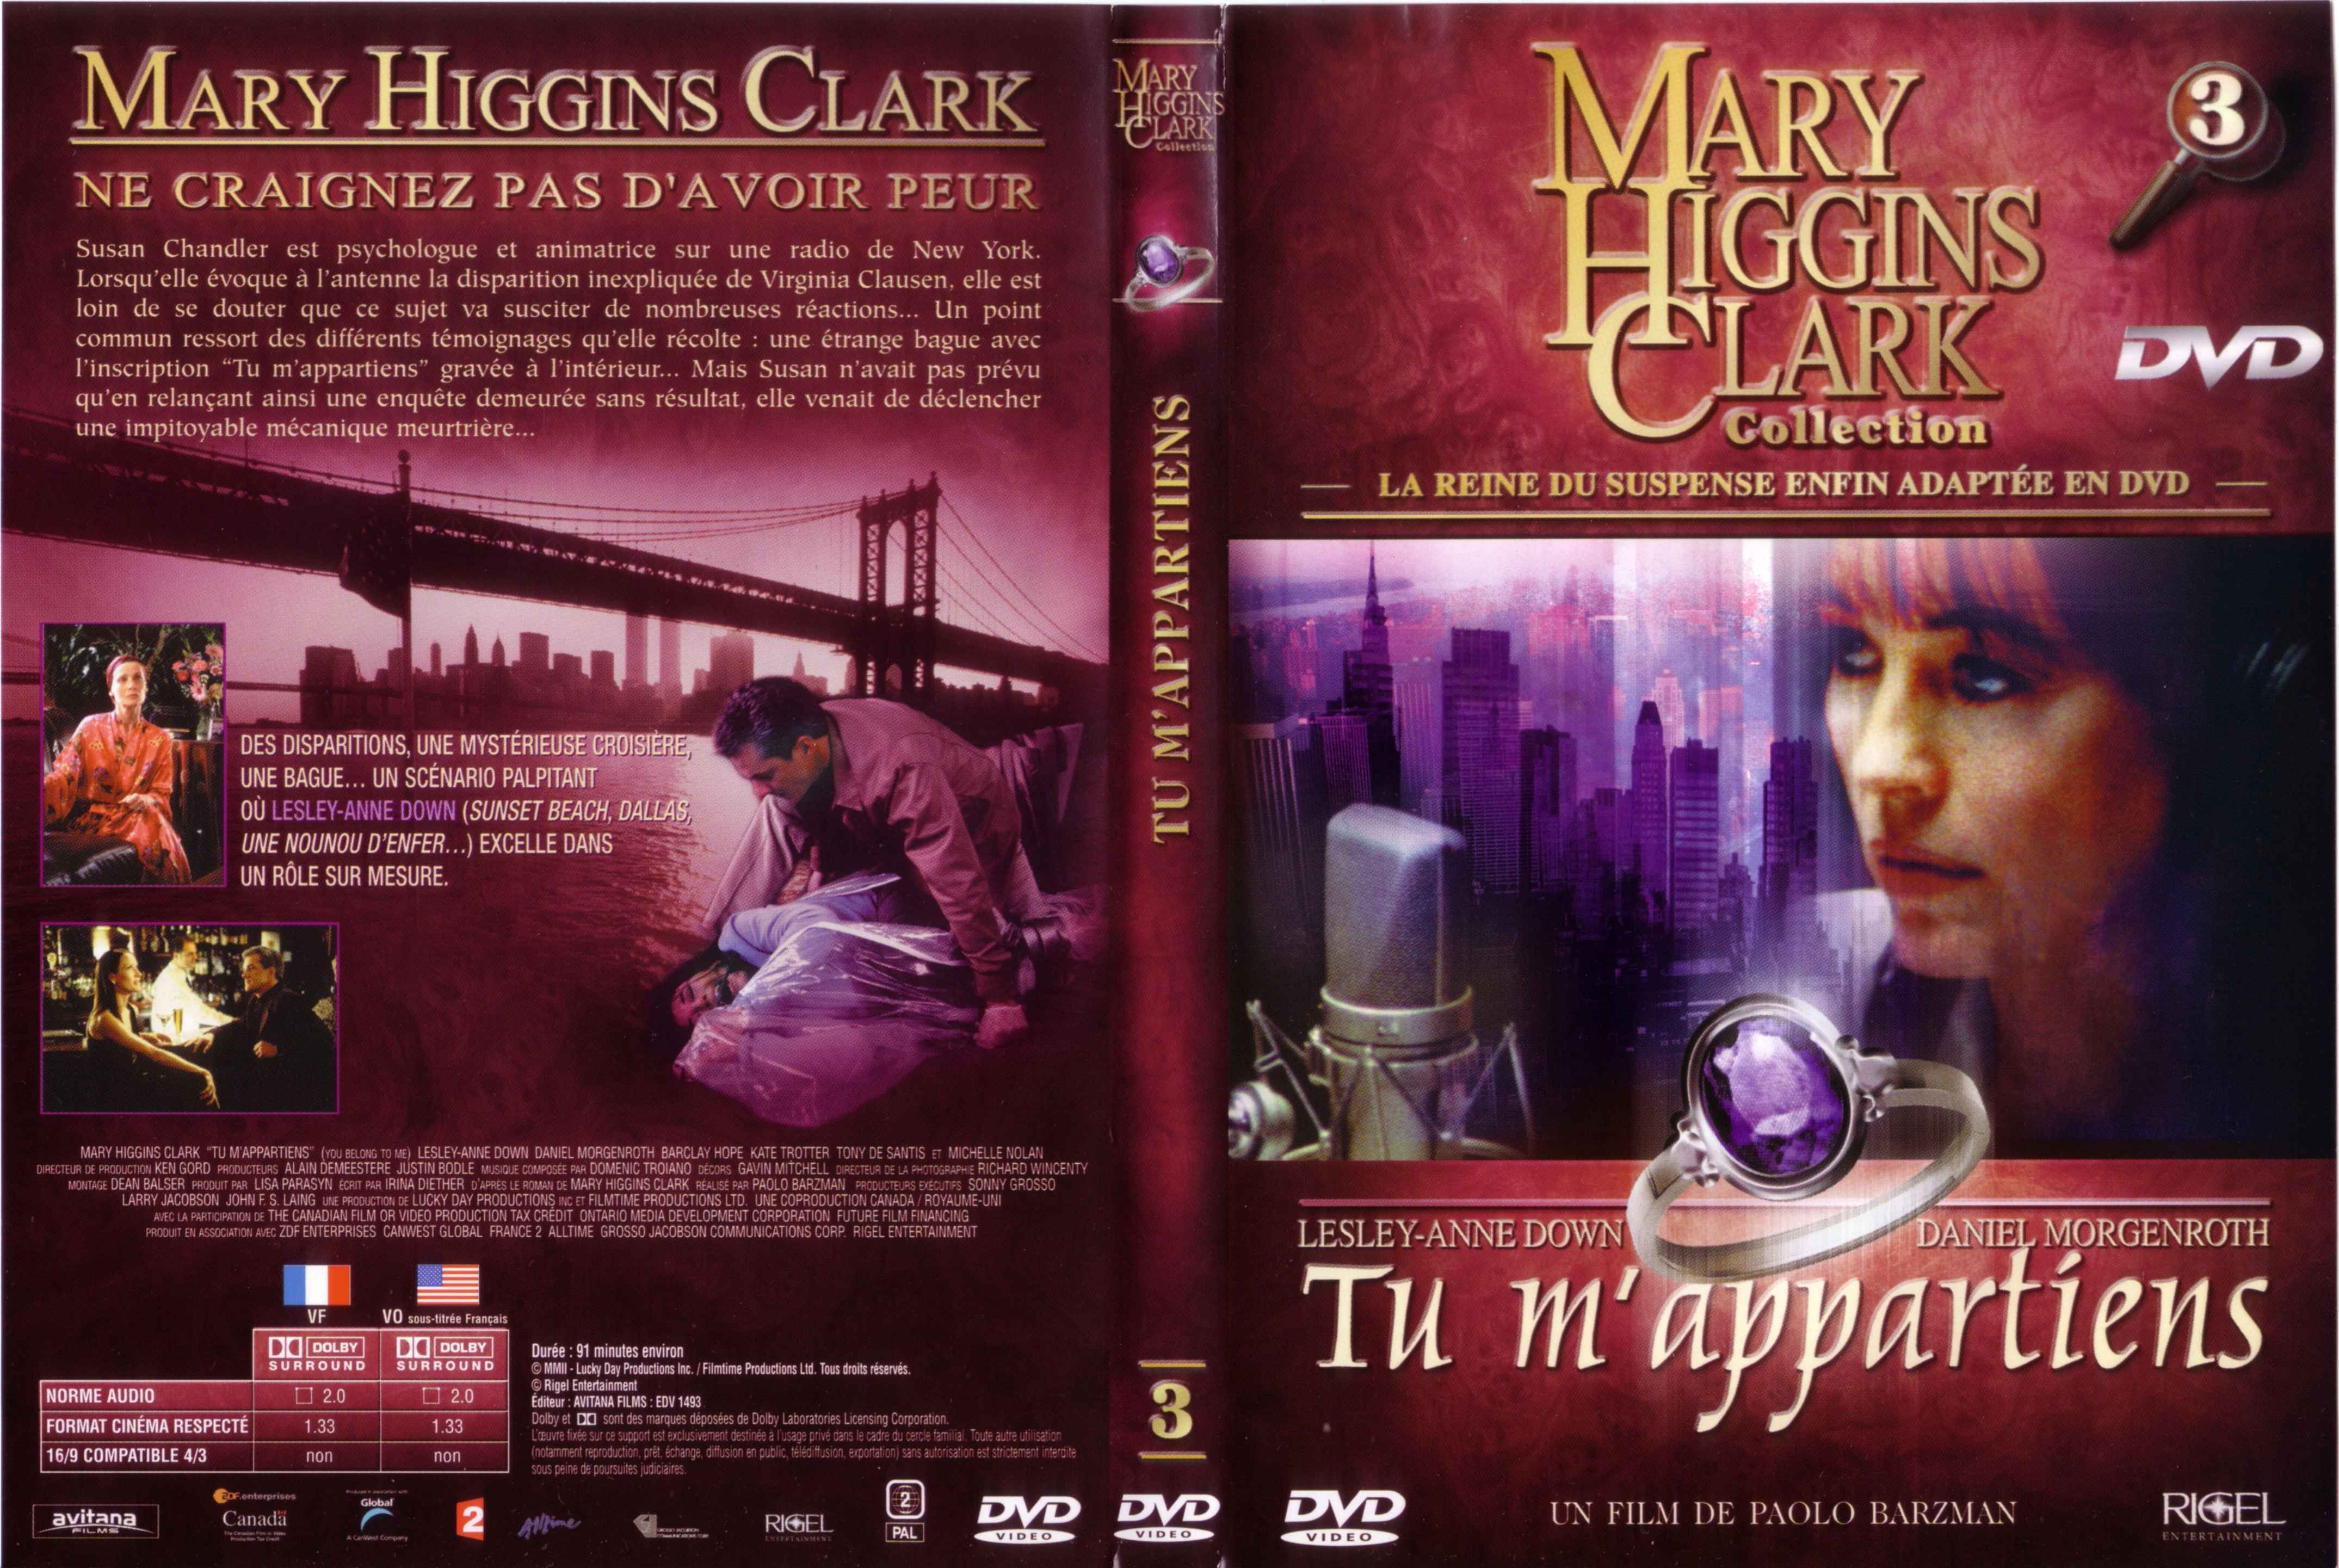 Jaquette DVD de Mary Higgins Clark vol 03 - Tu m'appartiens - Cinéma Passion4299 x 2882